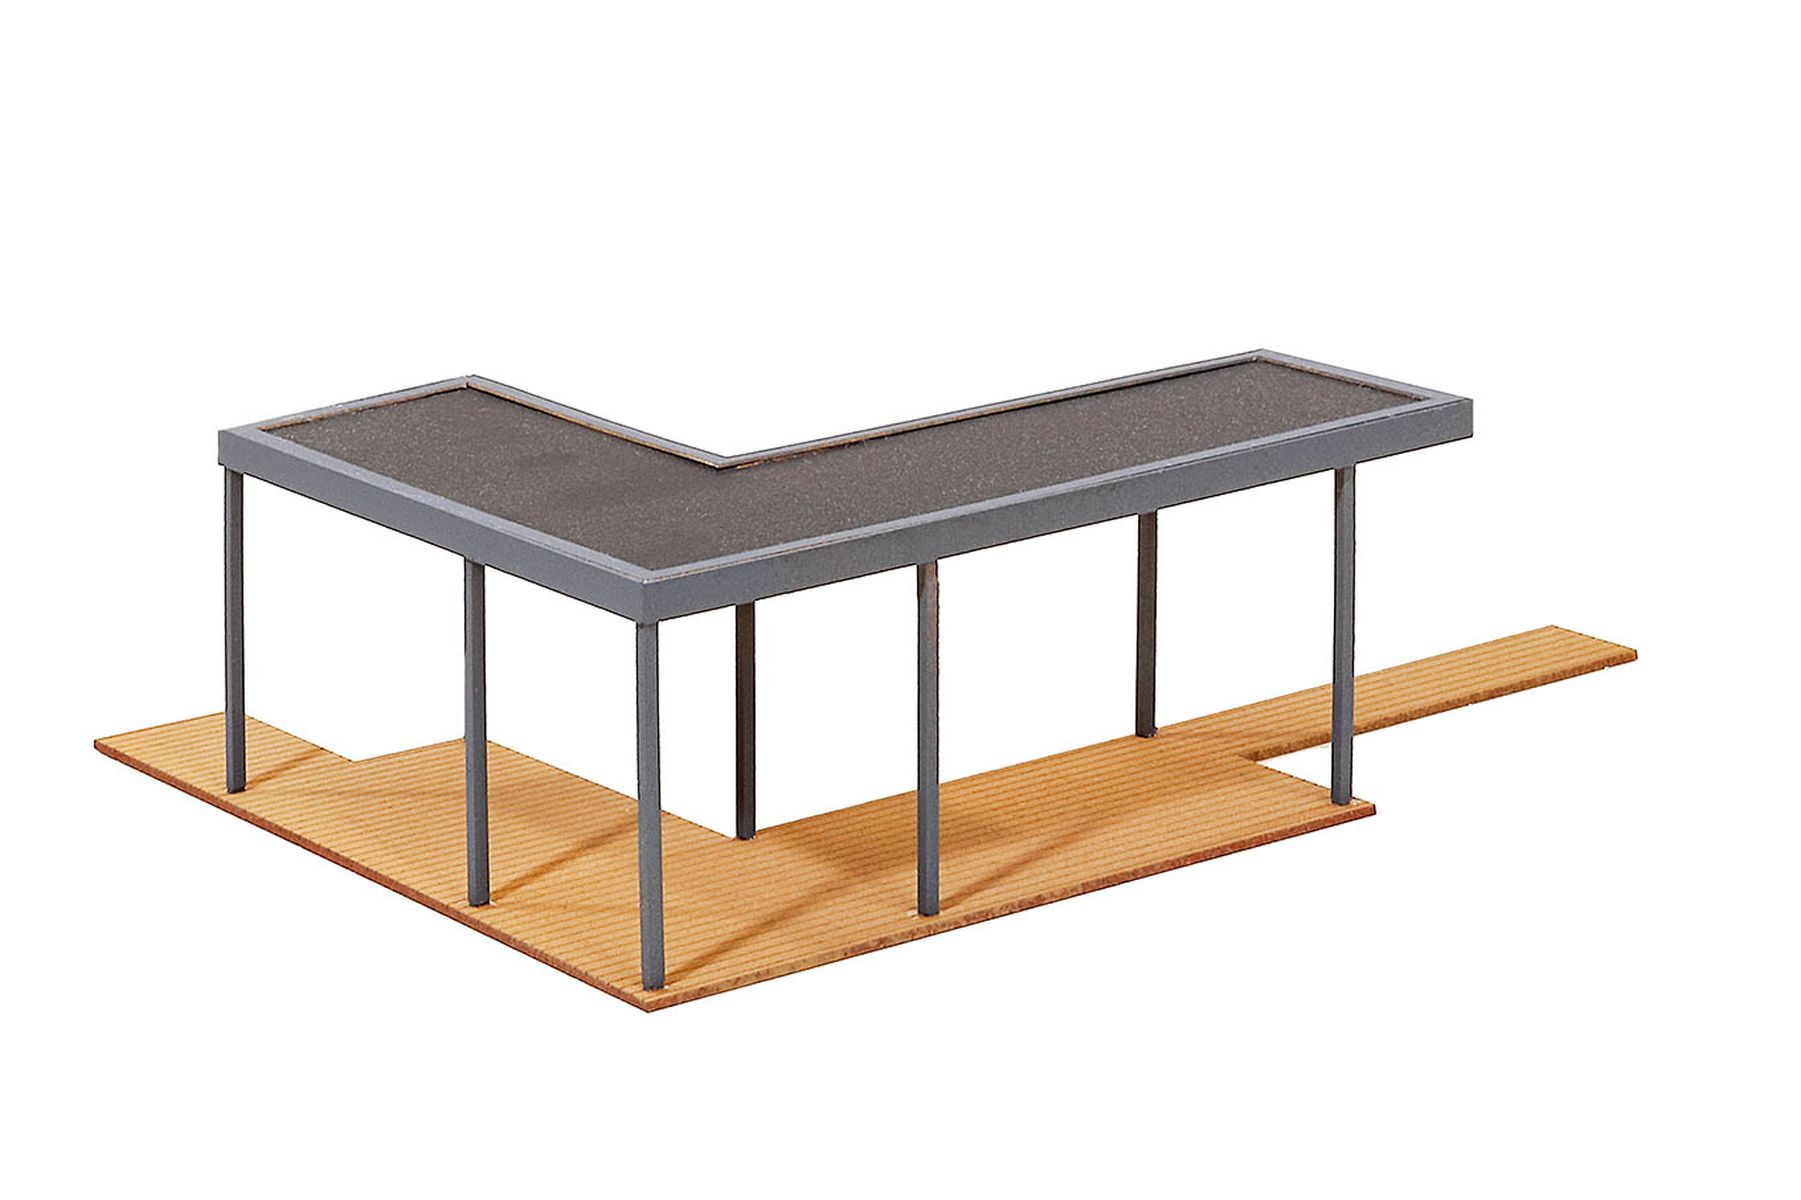 Kibri 38345 - Überdachte Terrasse - Polyplate Bausatz